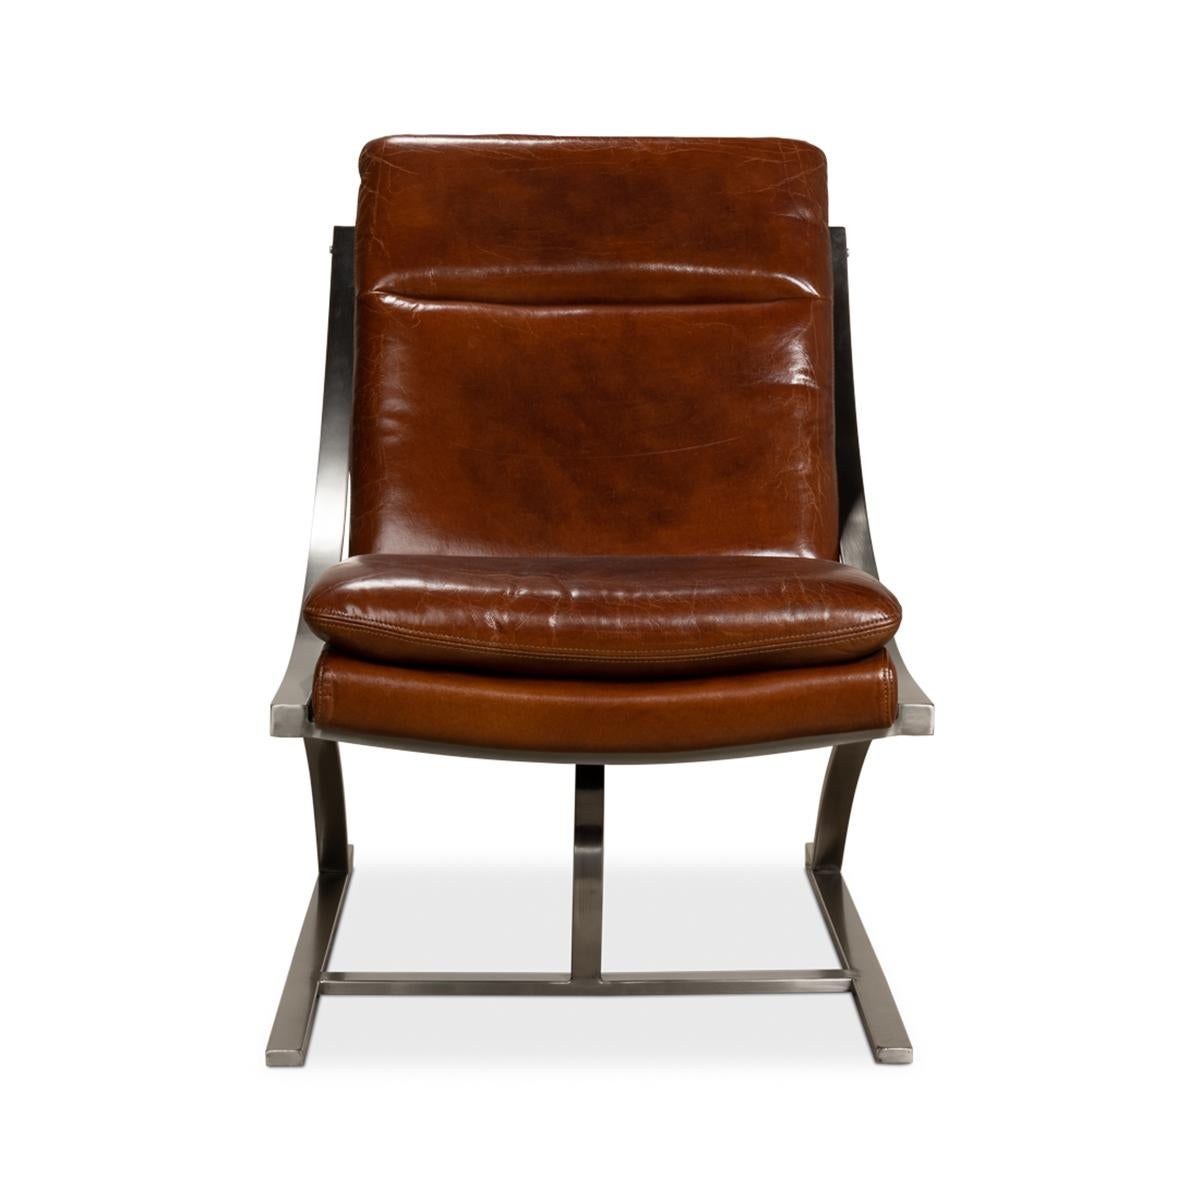 Chaise moderne en acier inoxydable et cuir, cuir brun luxueux et chaud avec un cadre en acier inoxydable brossé et un design épuré et contemporain. 

Fabriqué en cuir aniline pur de première qualité dans la couleur 